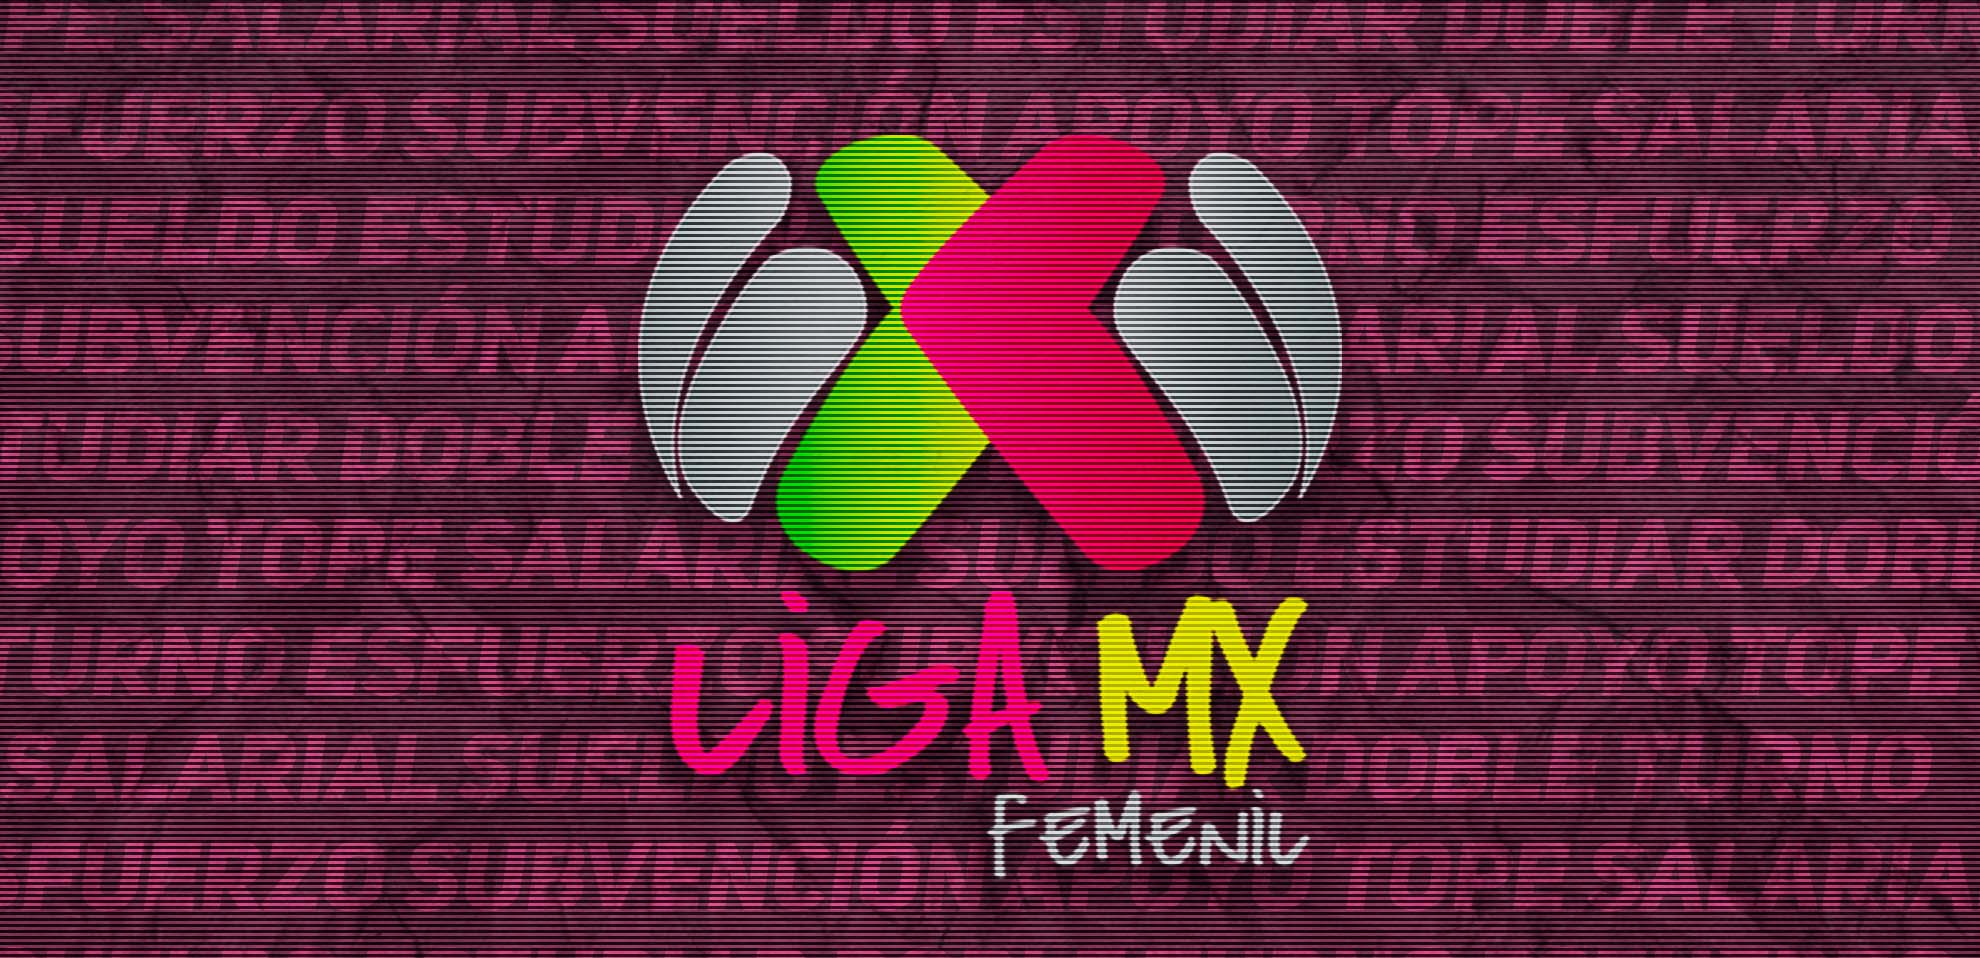 Liga MX Femenil